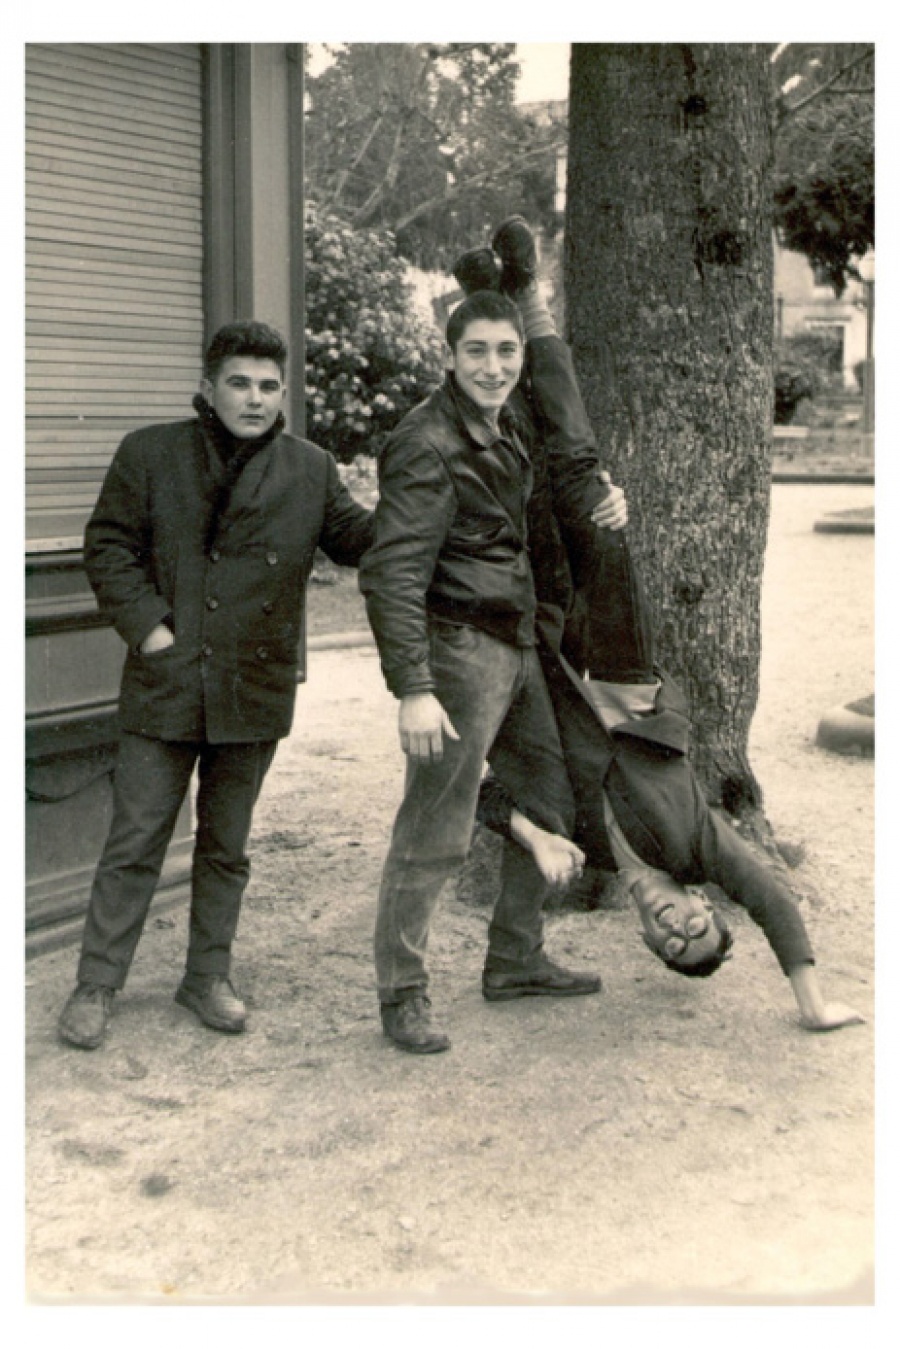 1965 - Haciendo el pino